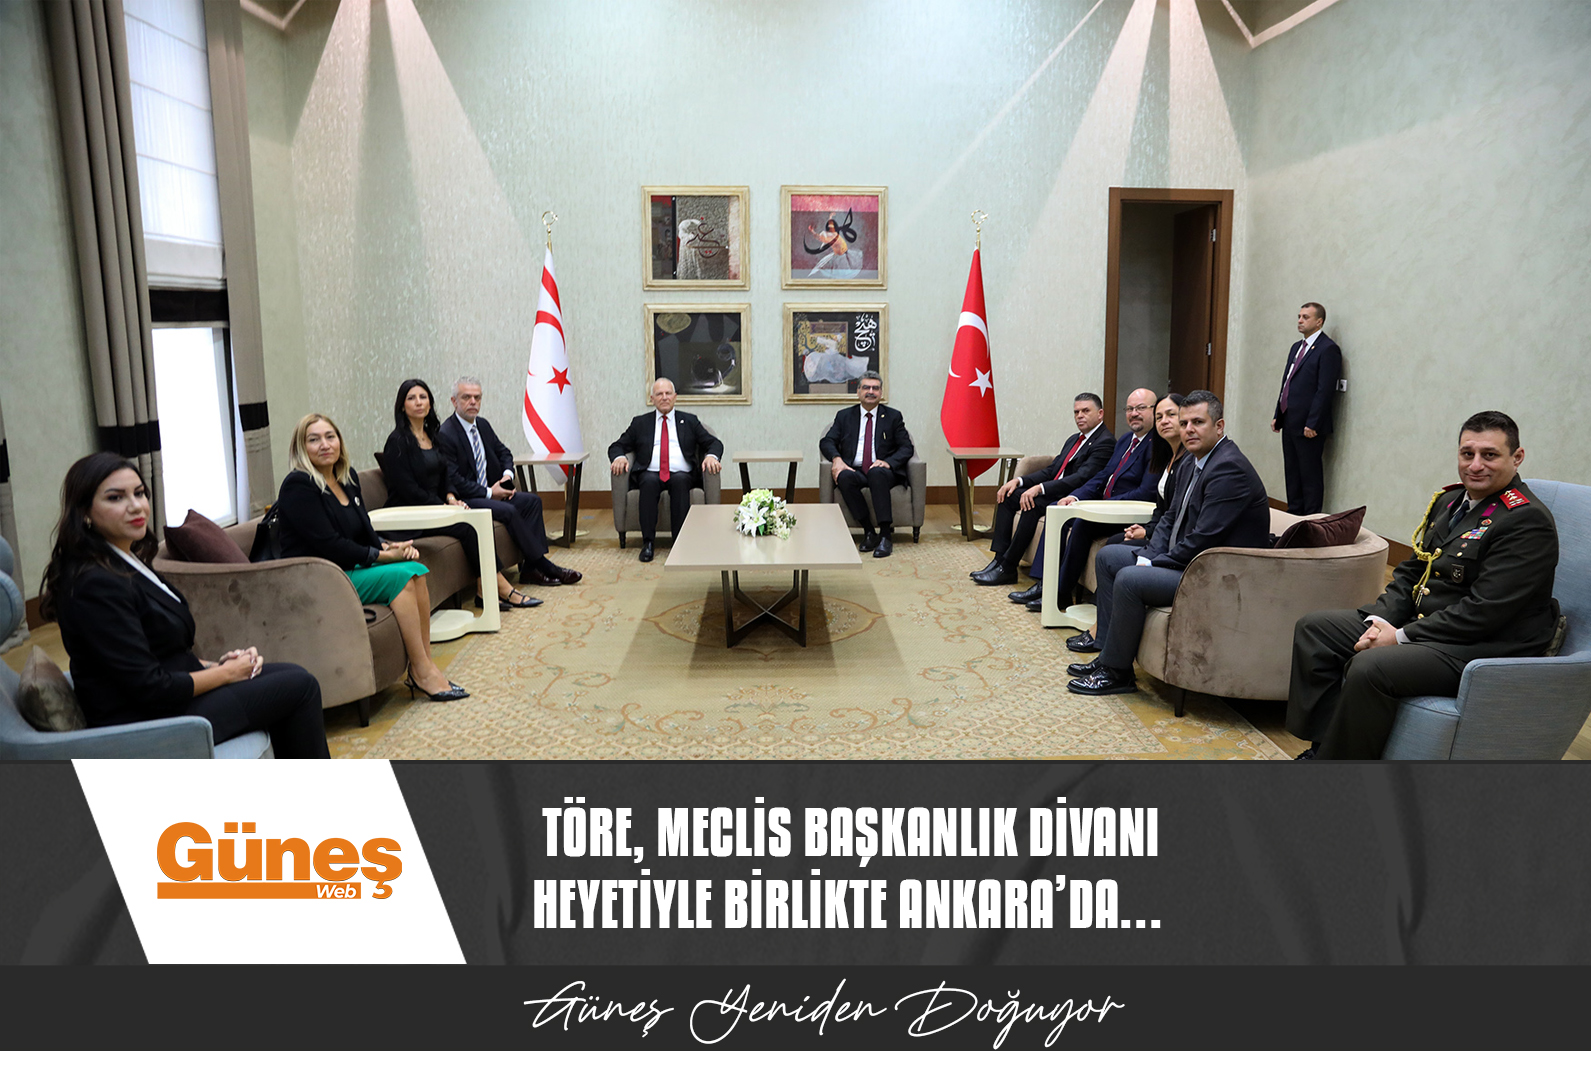 Töre, Meclis Başkanlık Divanı heyetiyle birlikte Ankara’da…